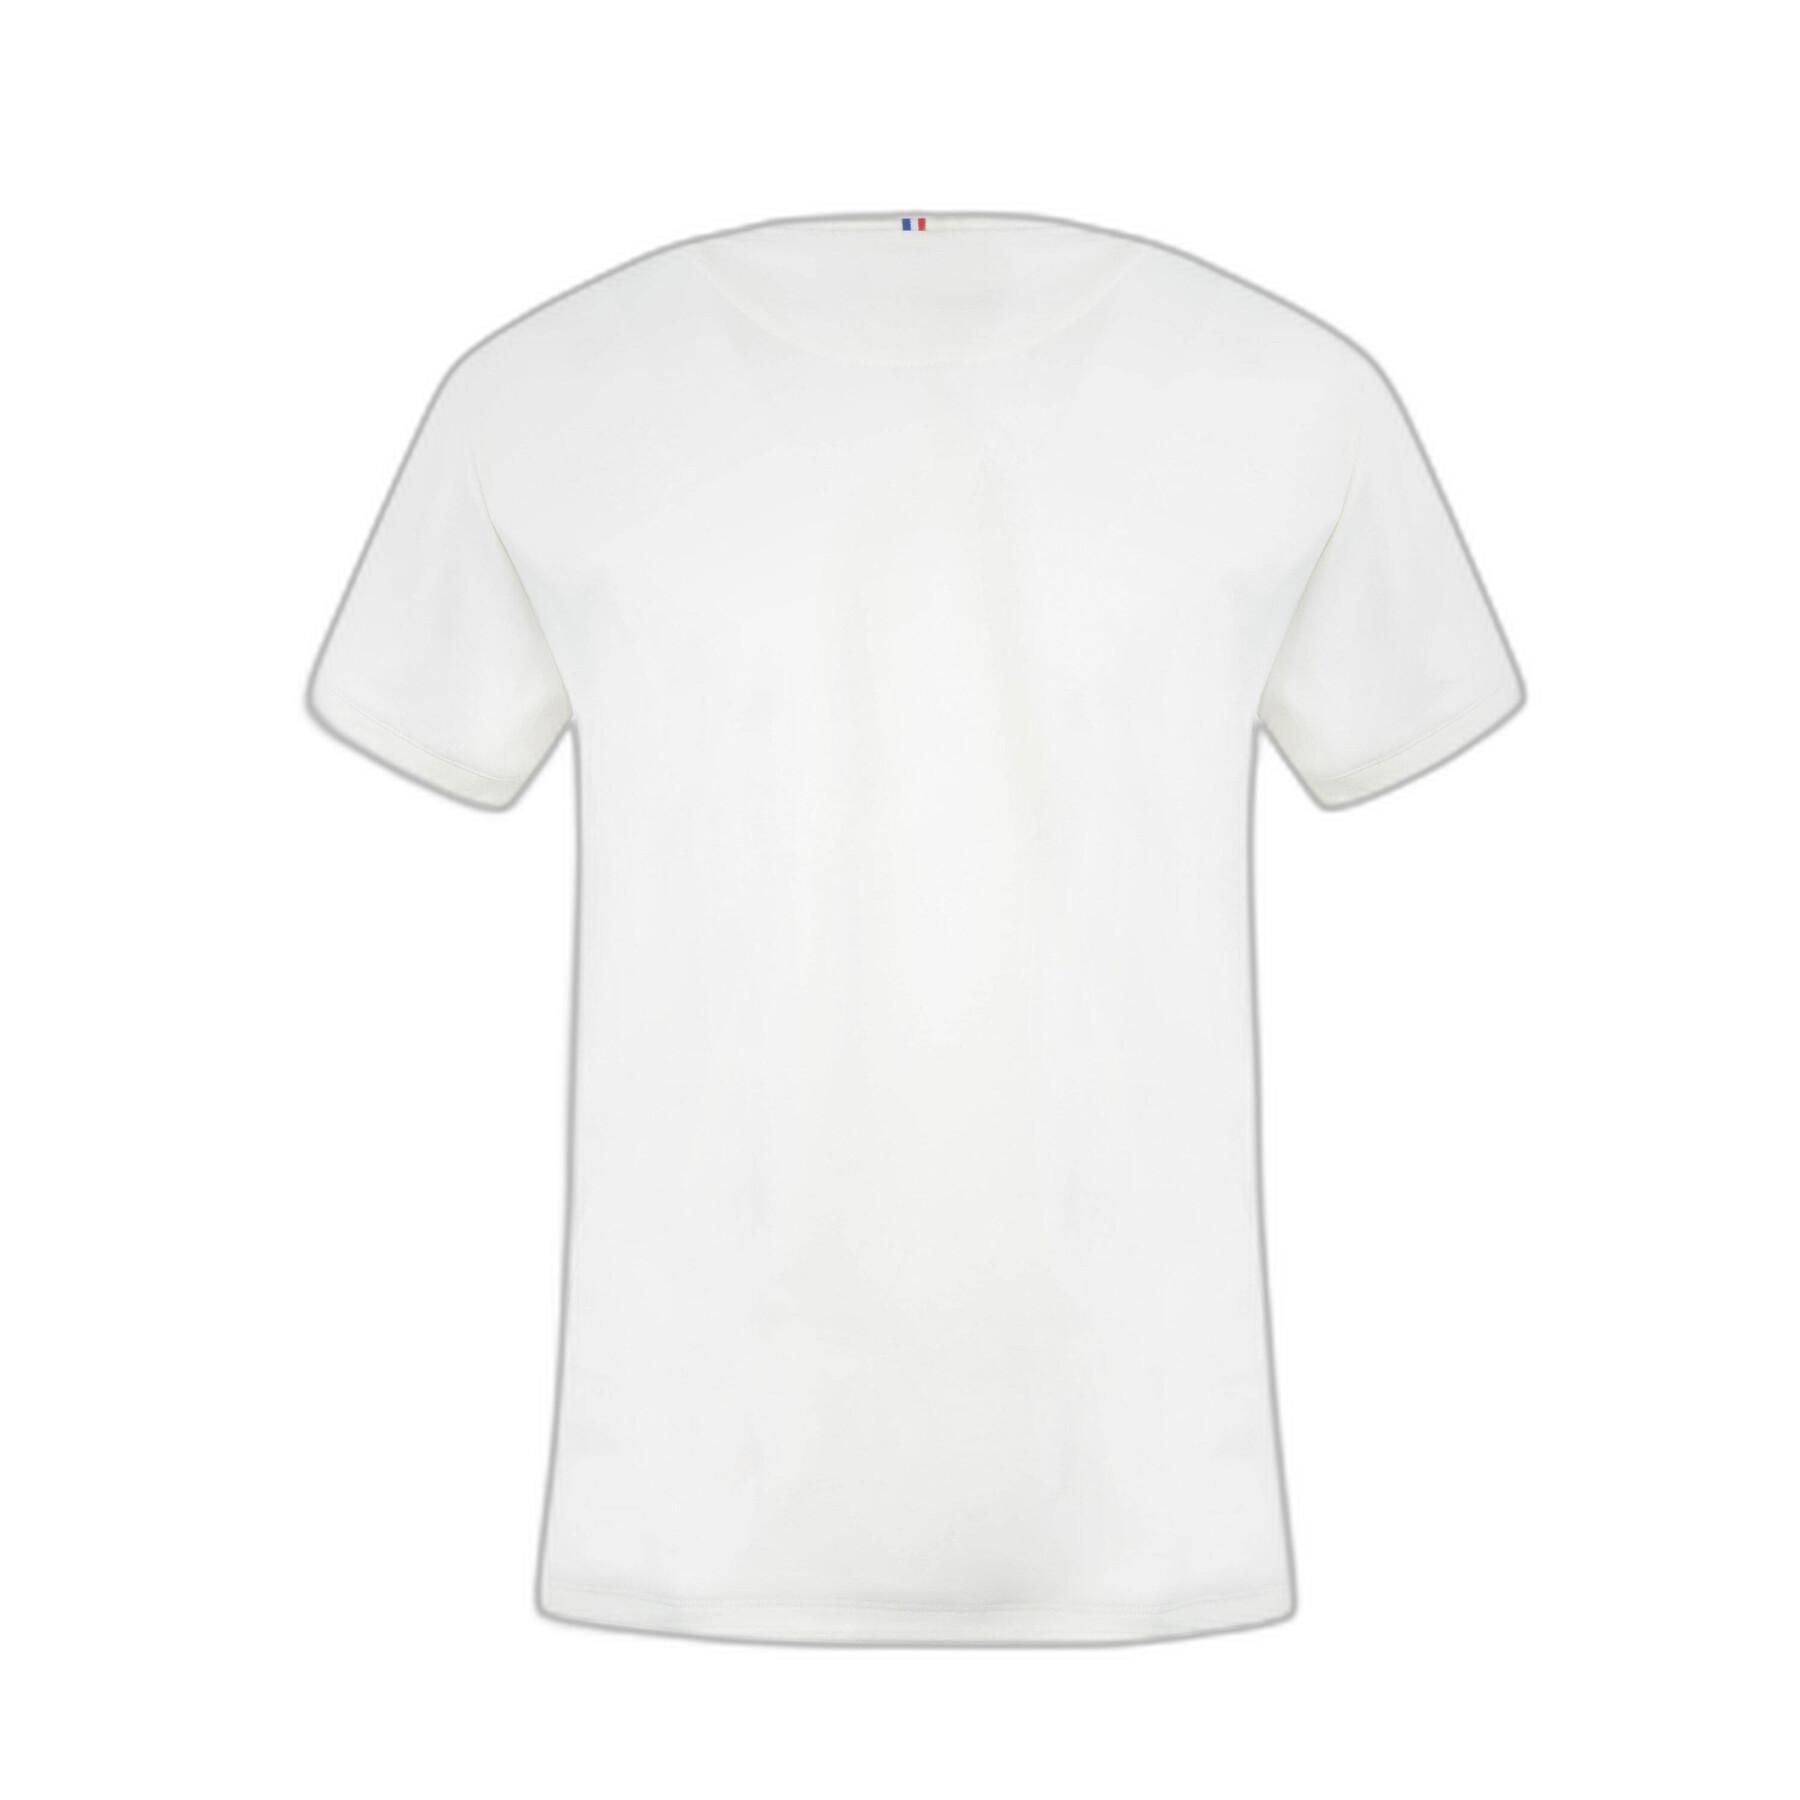 Women's T-shirt Le Coq Sportif Leona Rose N°2